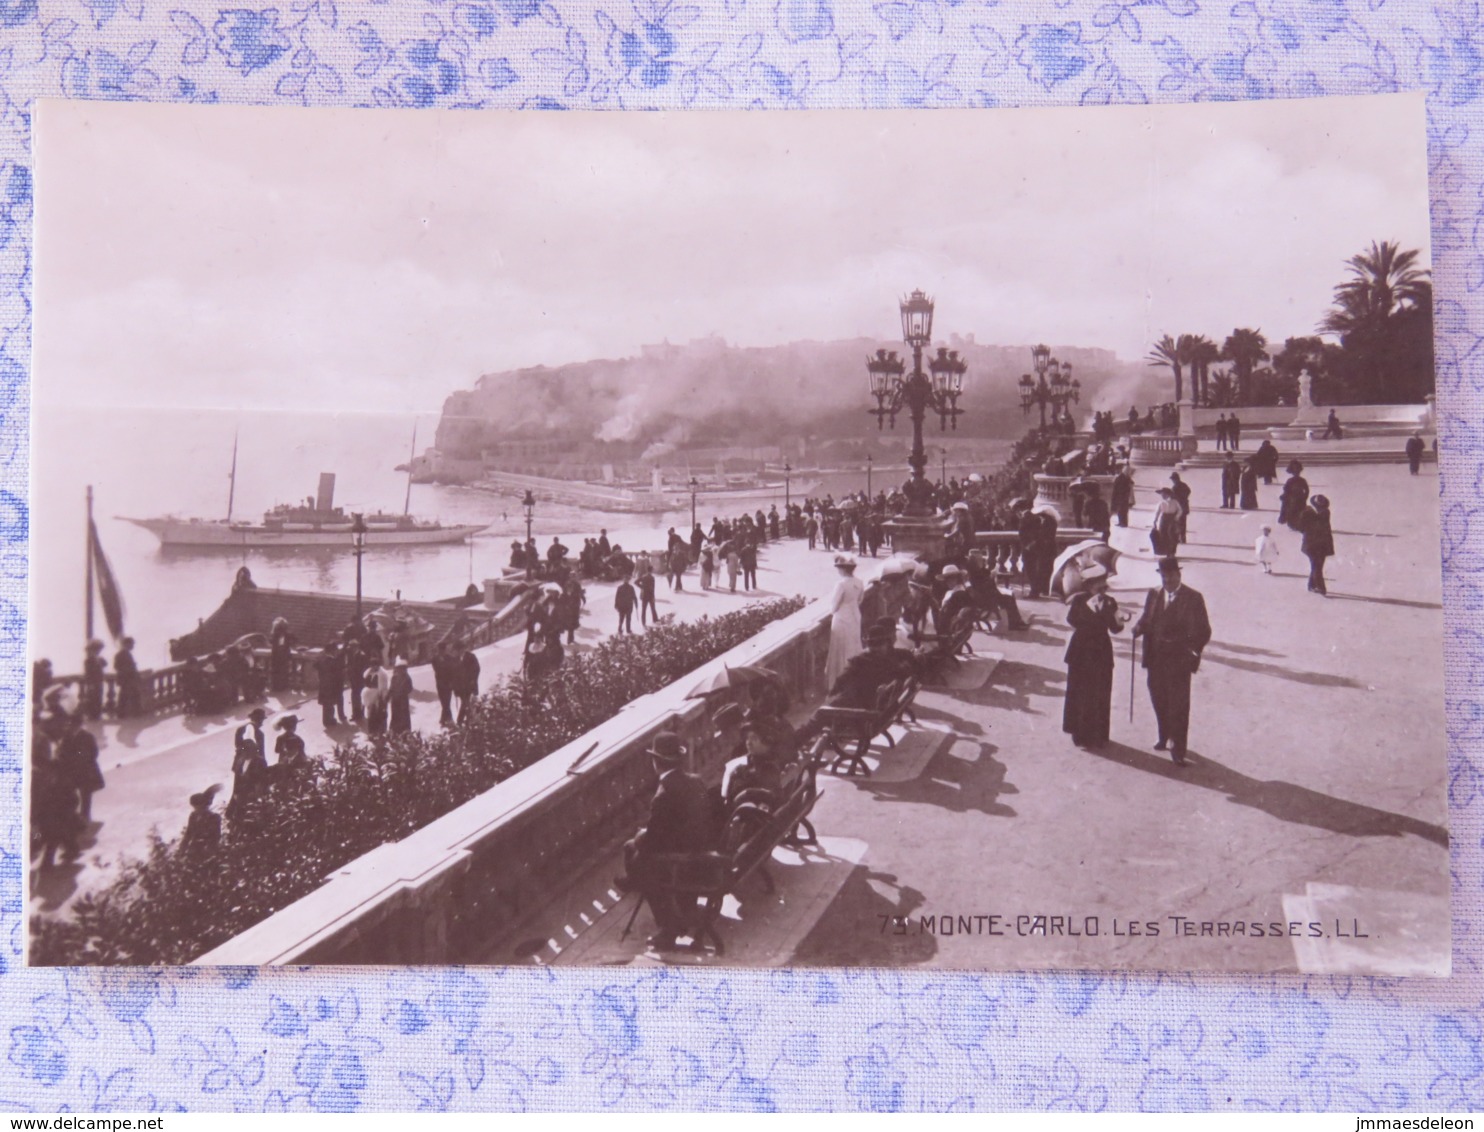 Monaco Unused Postcard Monte-Carlo - Terrasses - Ship - Les Terrasses